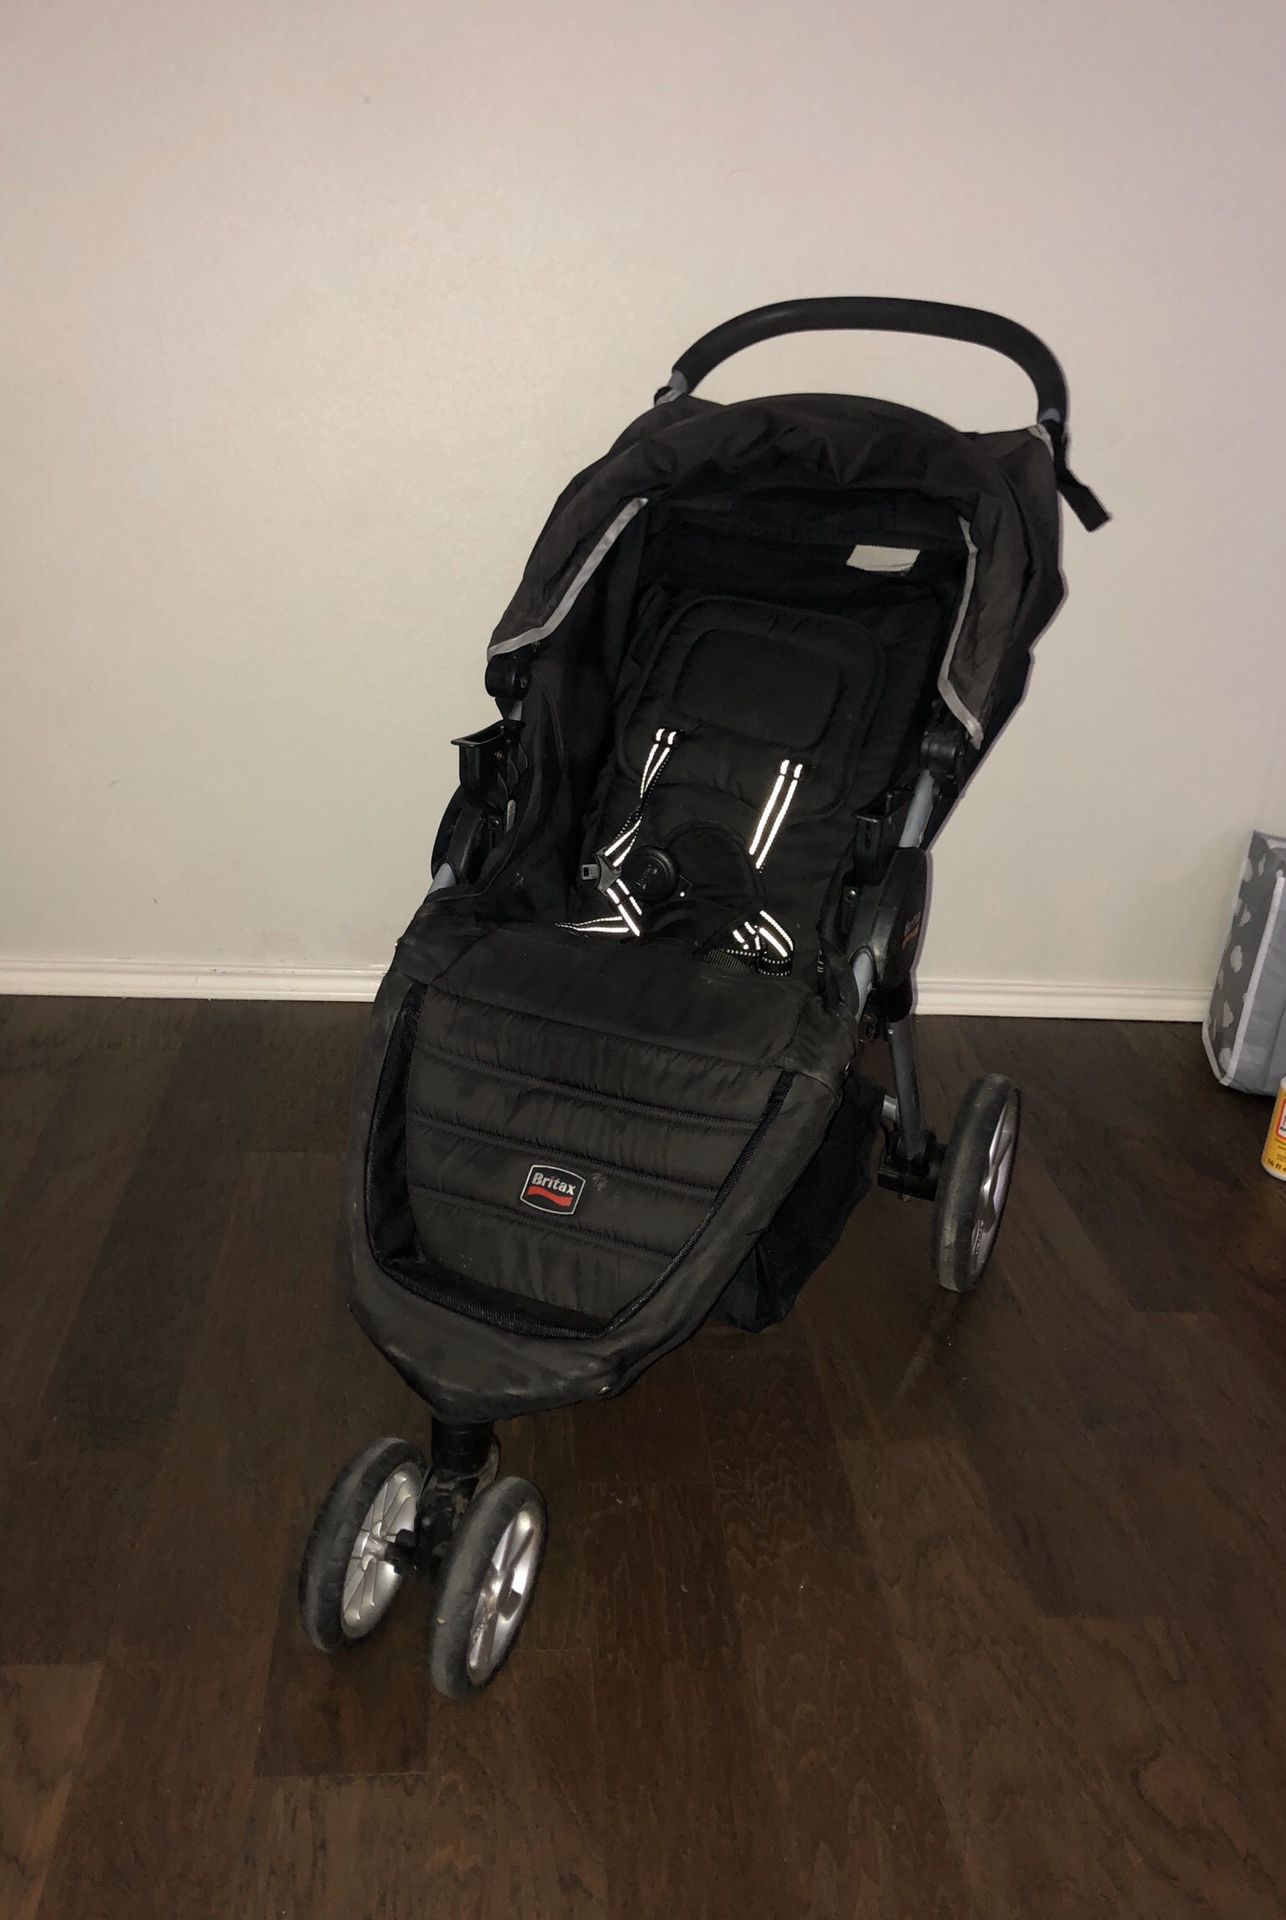 Britax Baby stroller